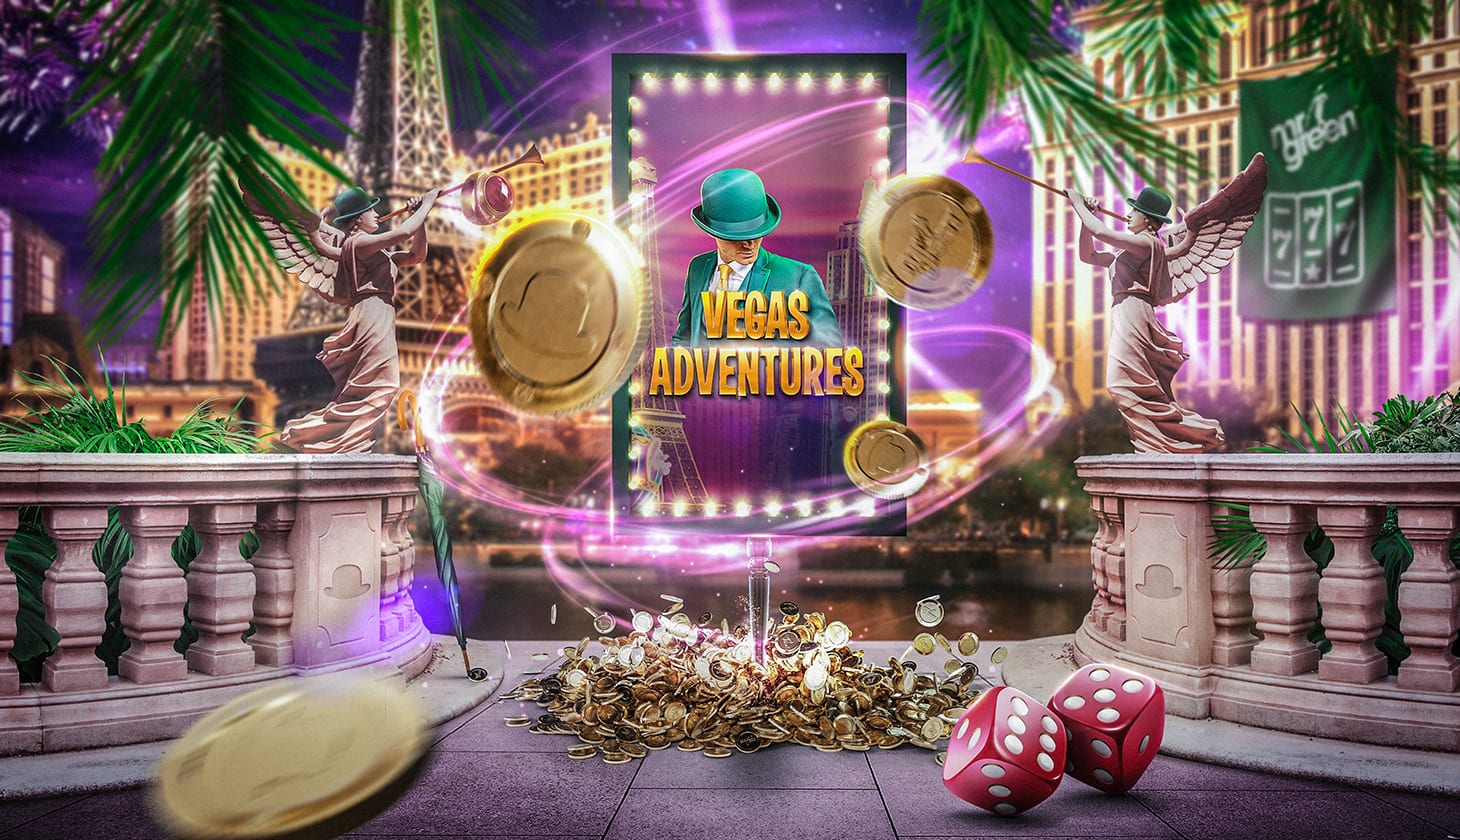 Testen Sie Den Vegas Adventures With Mr Green Slot Im Mr Green Casino